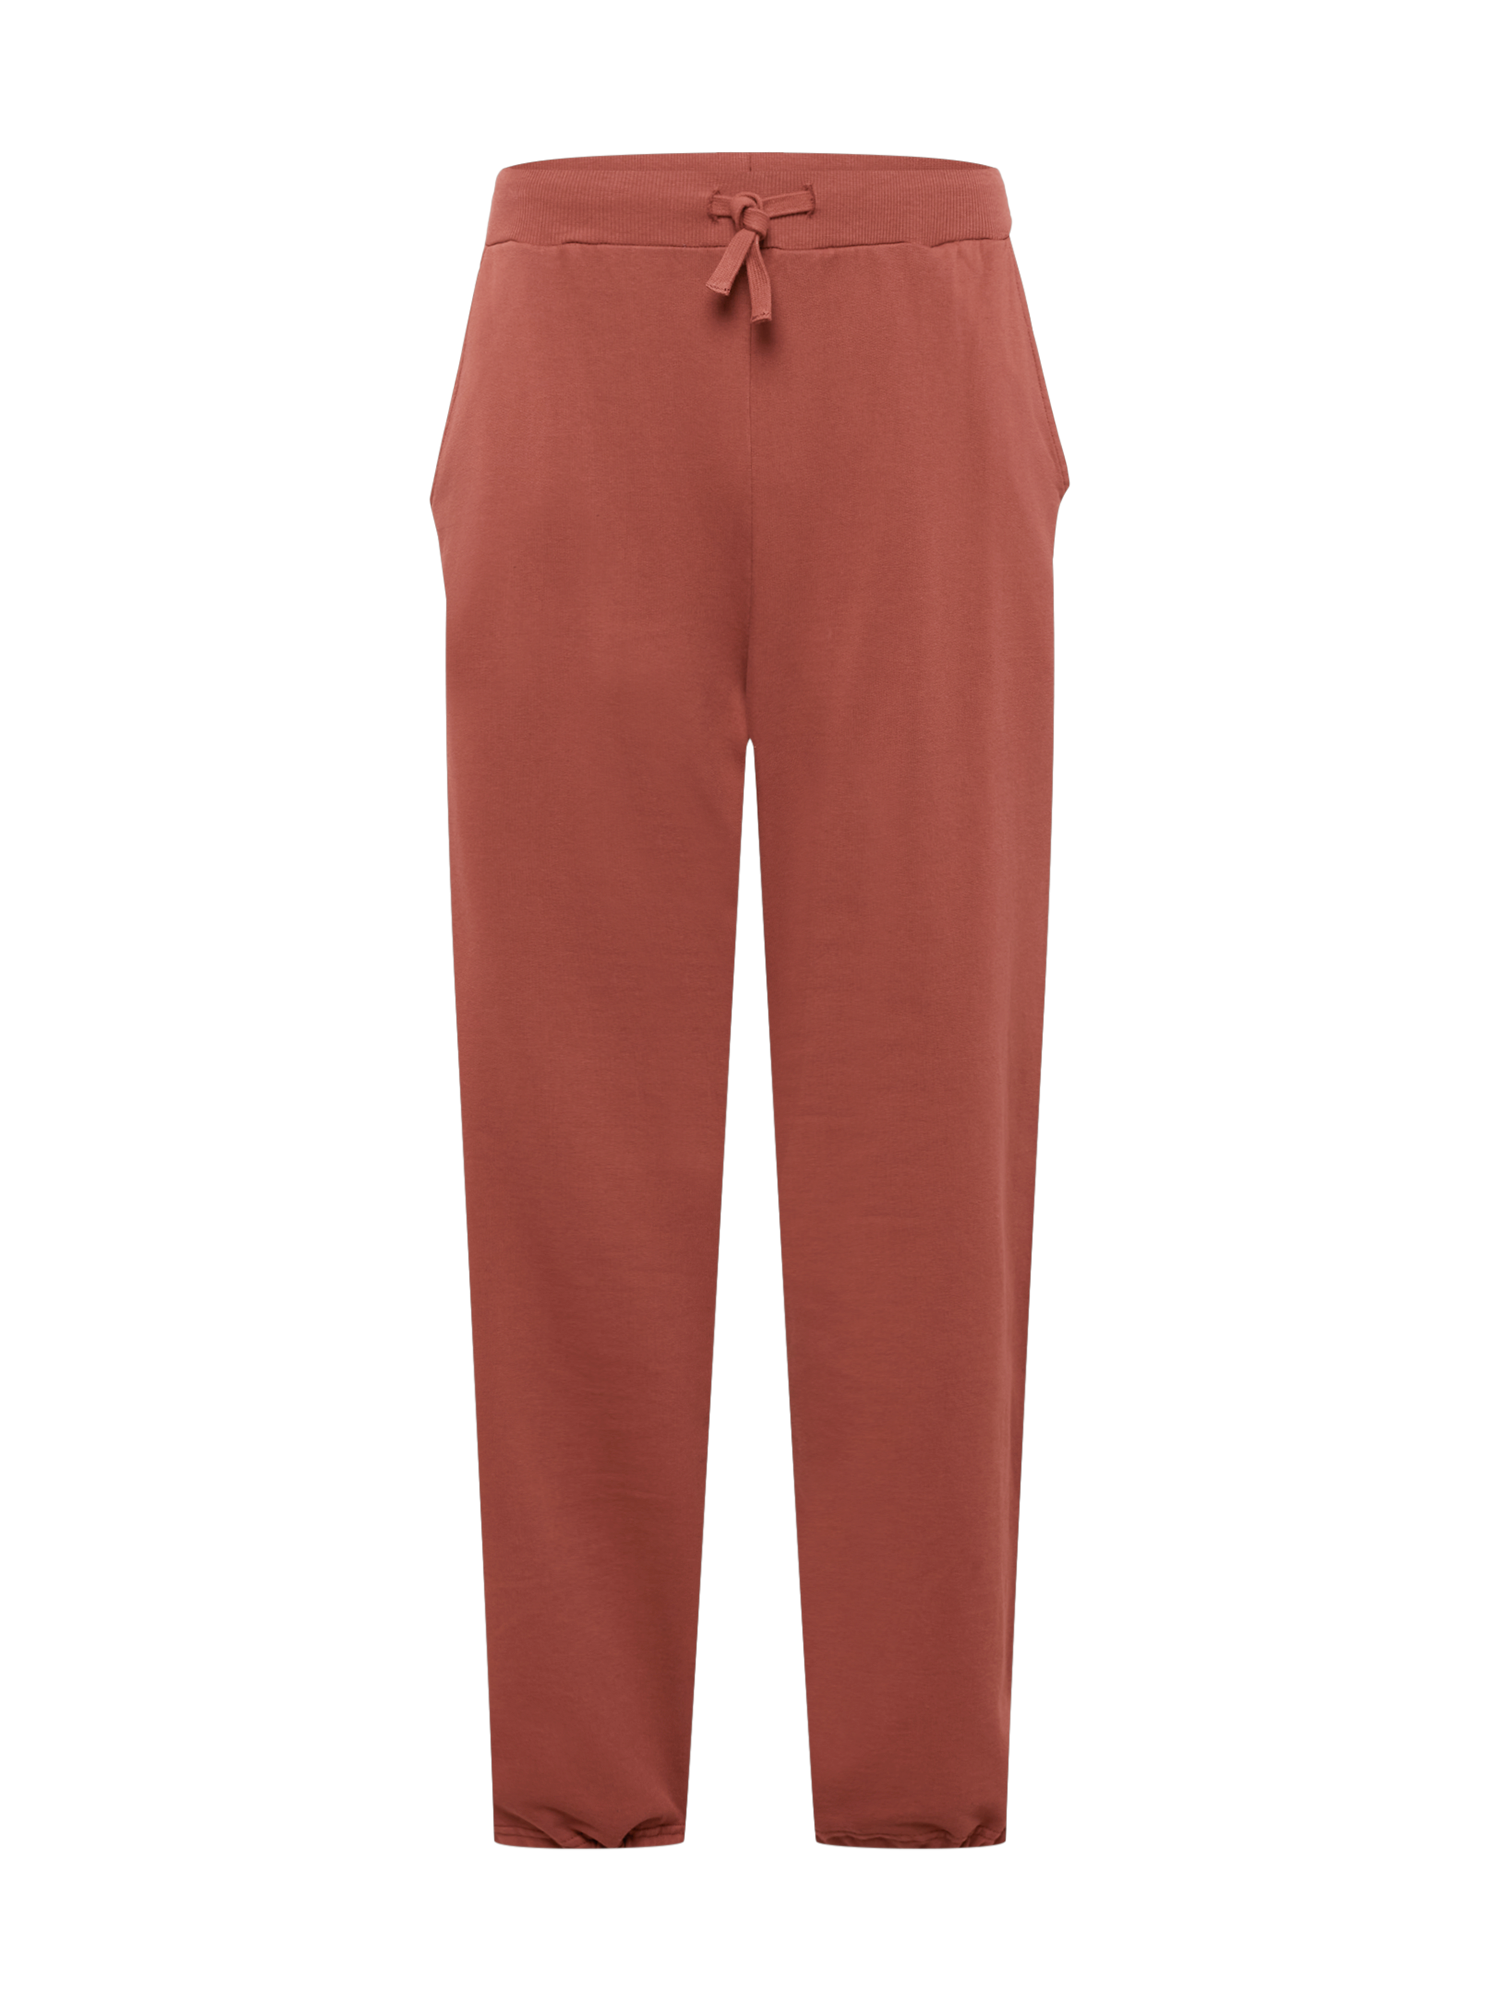 Ekskluzywne Odzież  Limited Spodnie Luis w kolorze Brązowym 